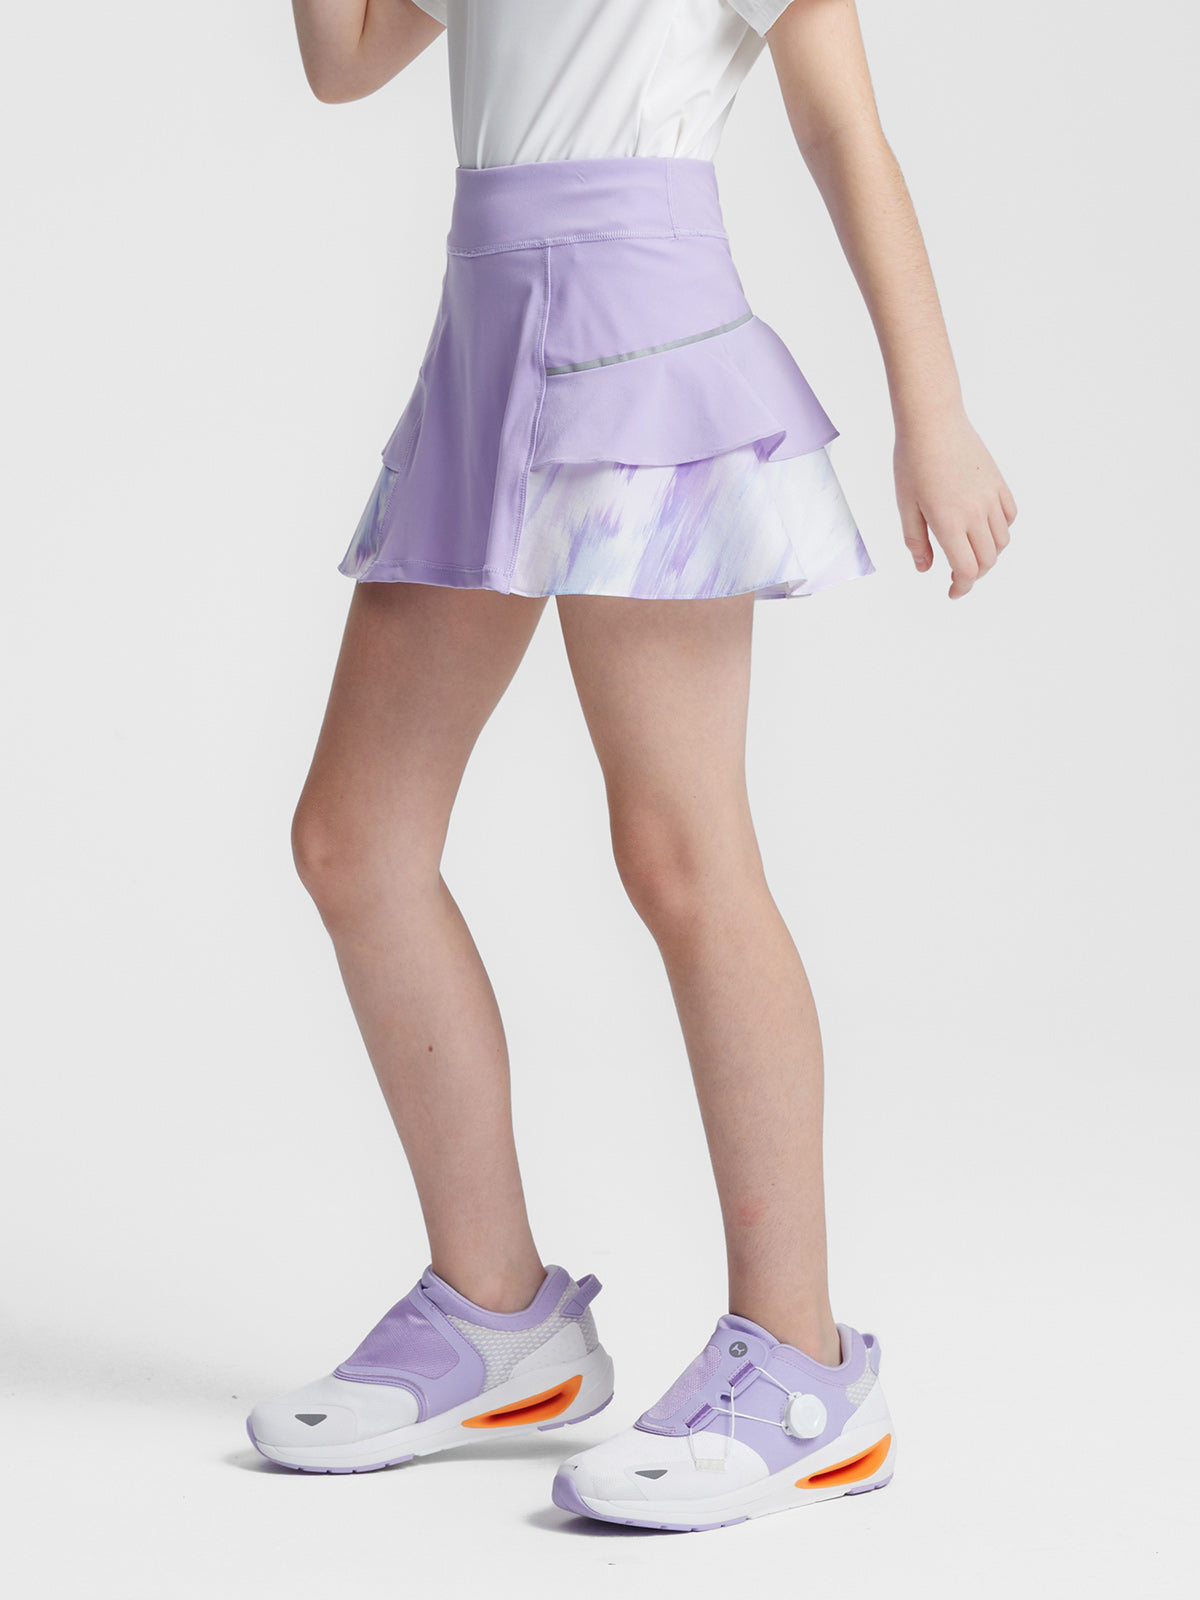 Curved Hem Skirt for Tennis